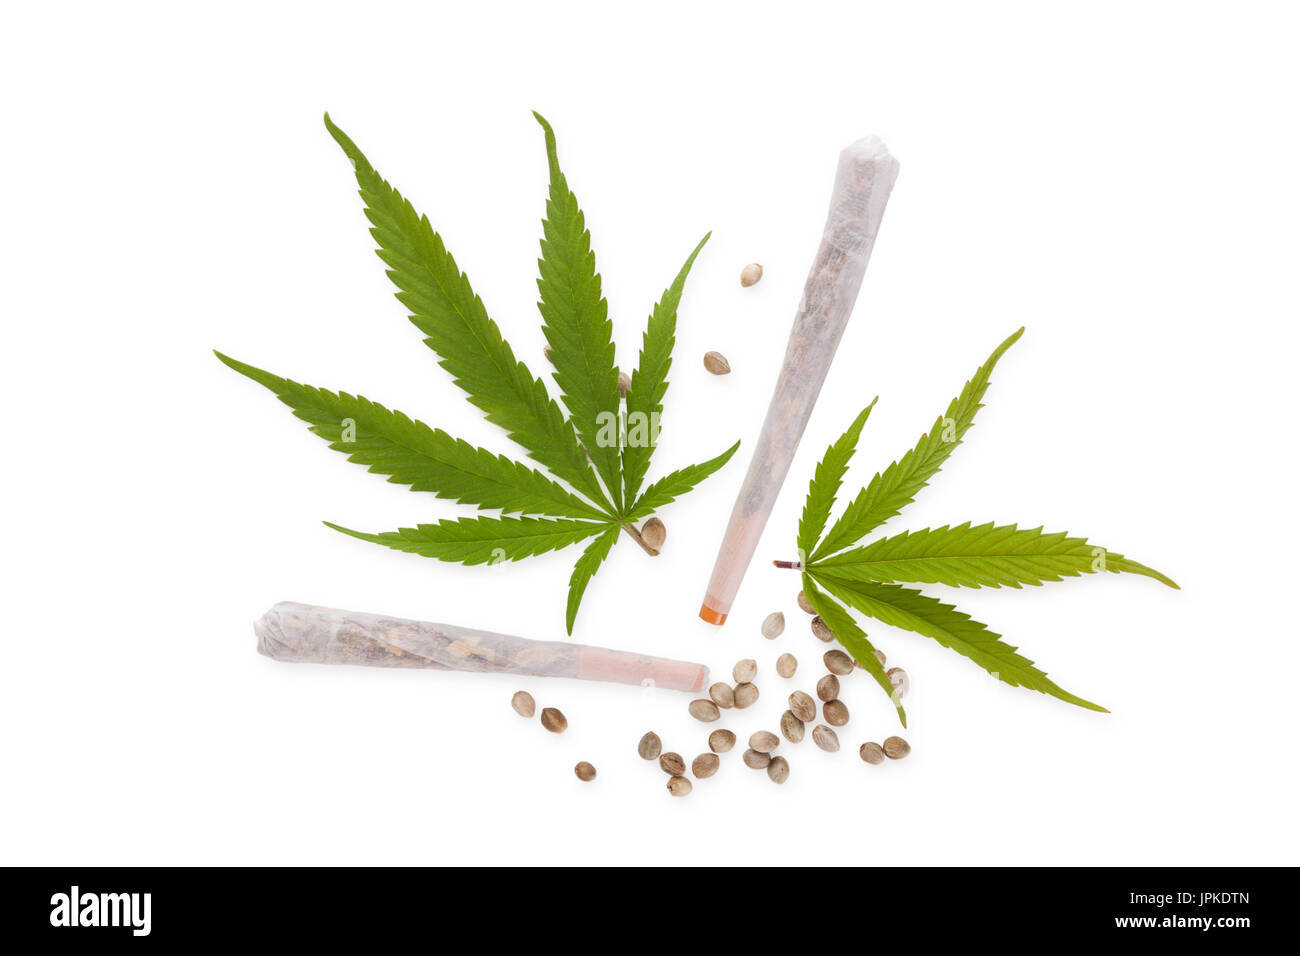 Cannabis-Gelenke und Samen mit Marihuana Blätter, isoliert auf weißem Hintergrund von oben. Medizinisches Marihuana, natürliches Heilmittel. Stockfoto